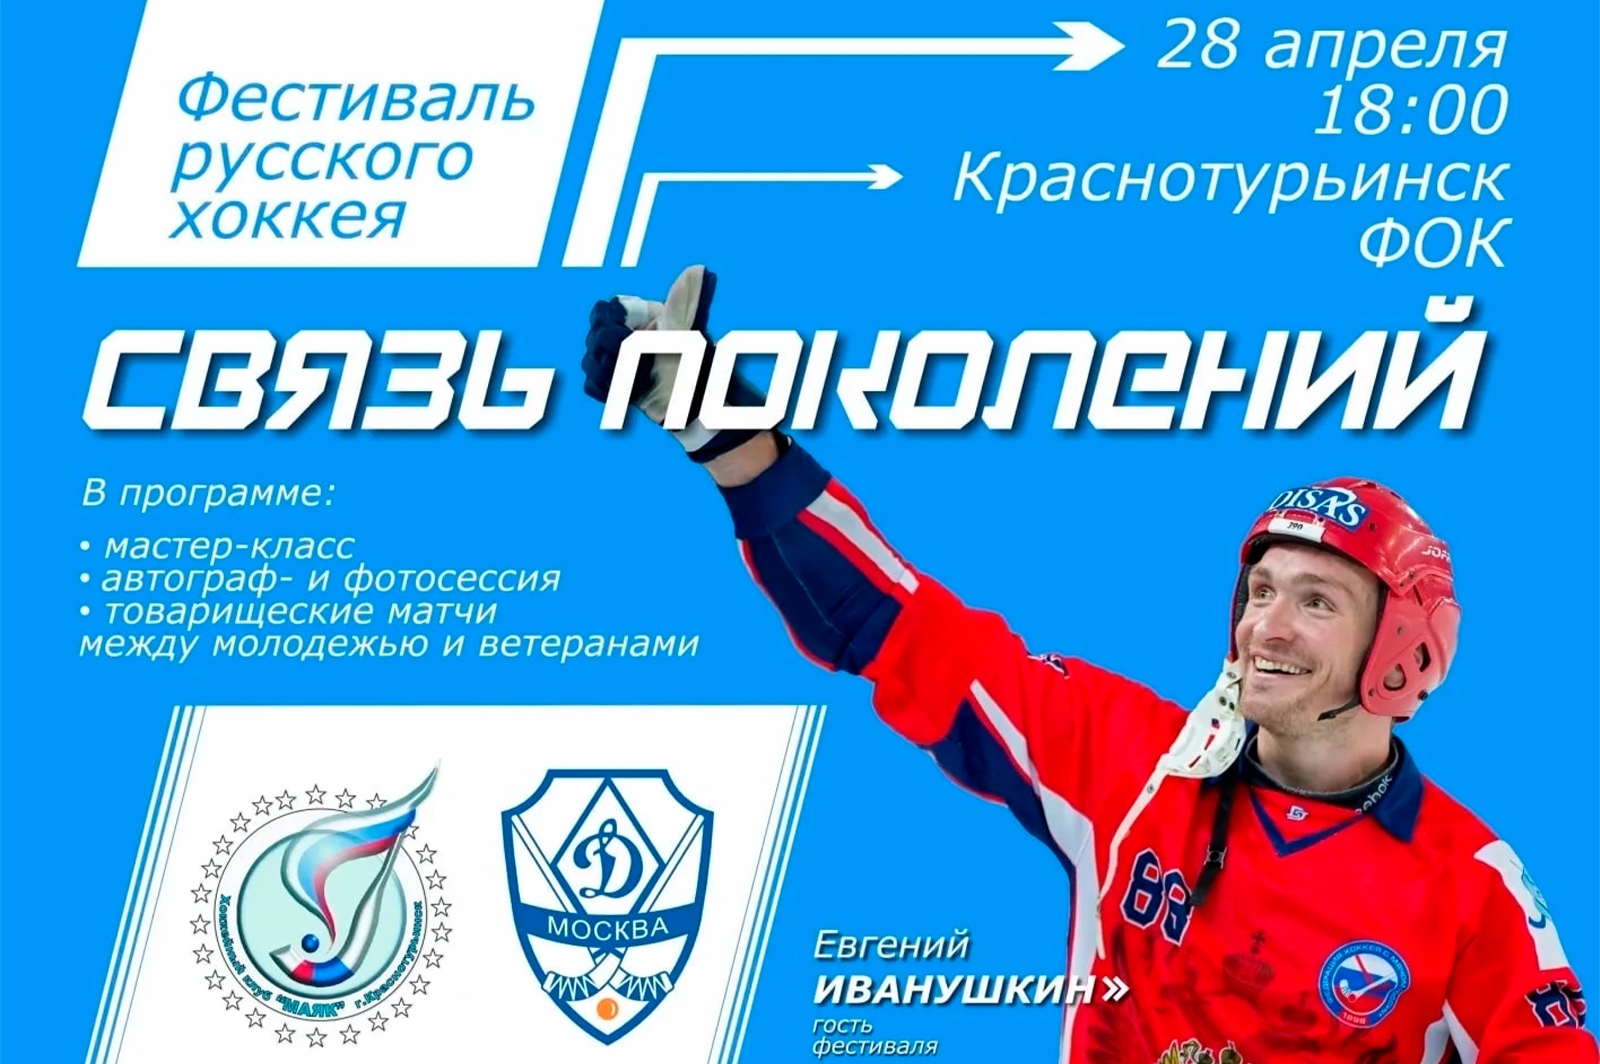 Представители «Трубника» примут участие в фестивале русского хоккея